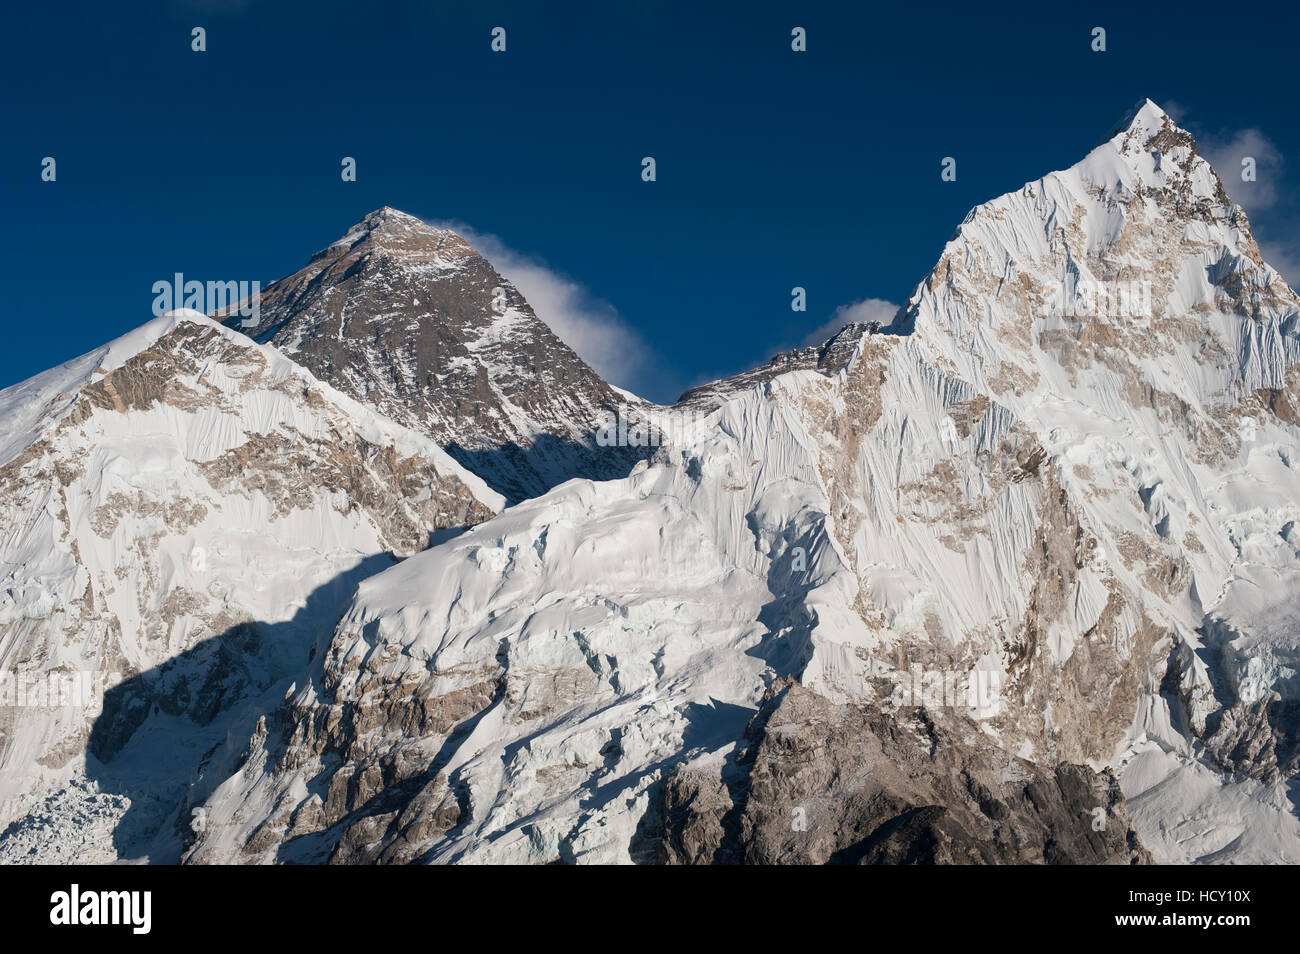 Die massive schwarze Pyramide-Gipfel des Mount Everest von Kala Patar mit Nuptse gesehen auf der rechten Seite, Khumbu-Region, Nepal Stockfoto